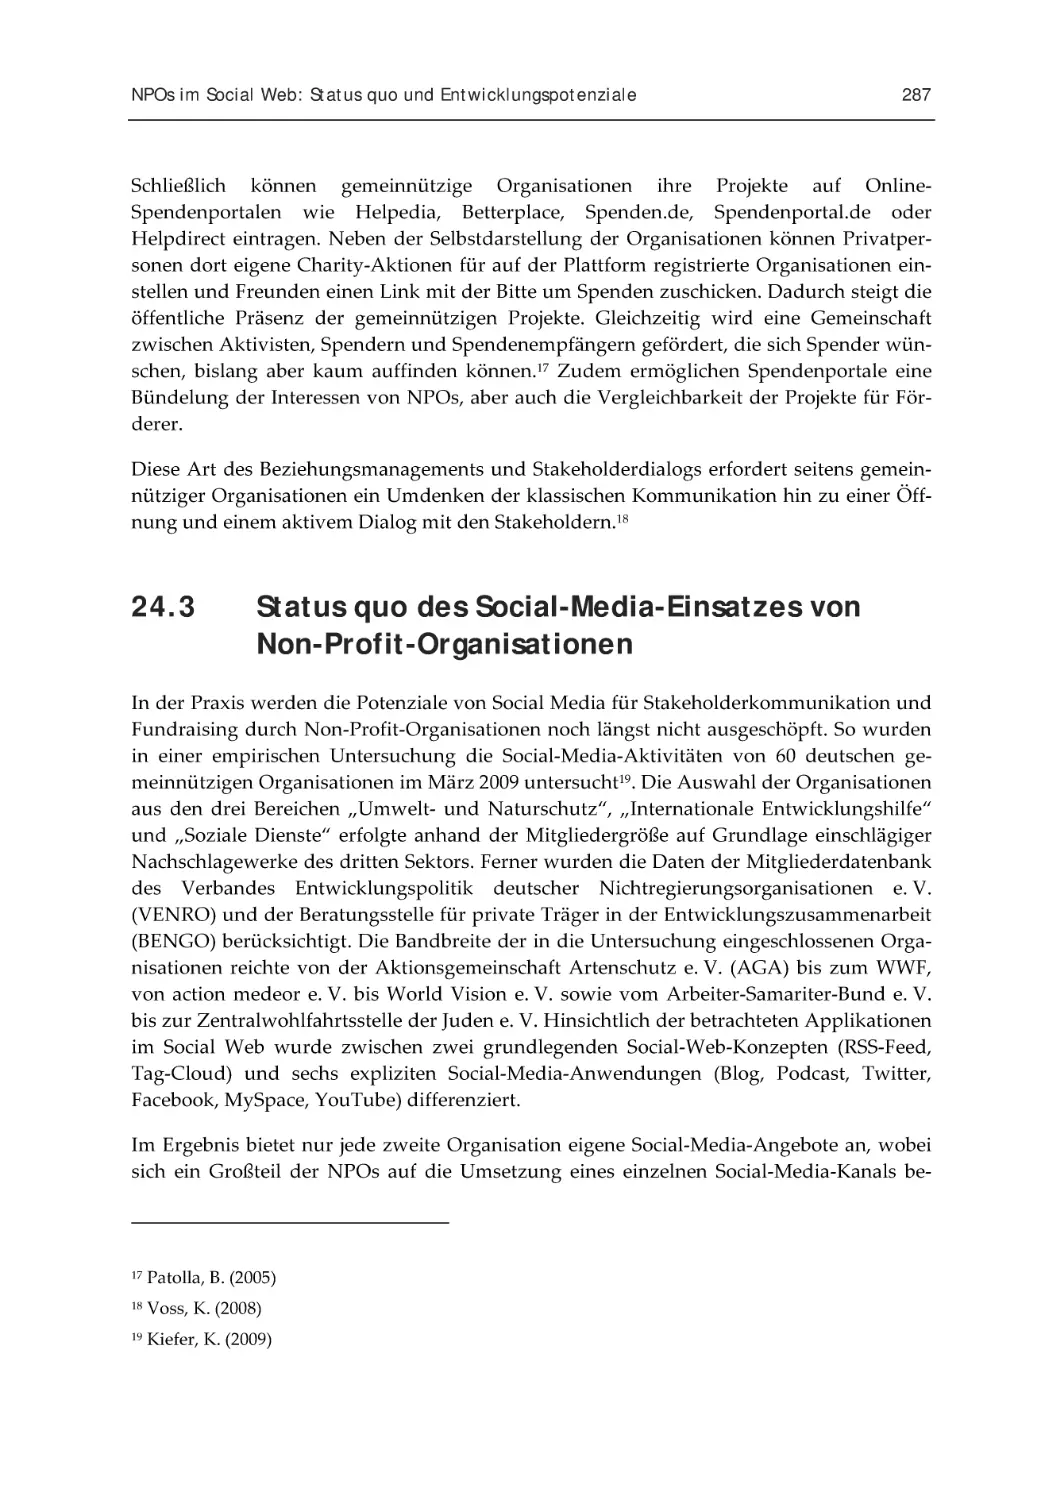 24.3 Status quo des Social-Media-Einsatzes von Non-Profit-Organisationen